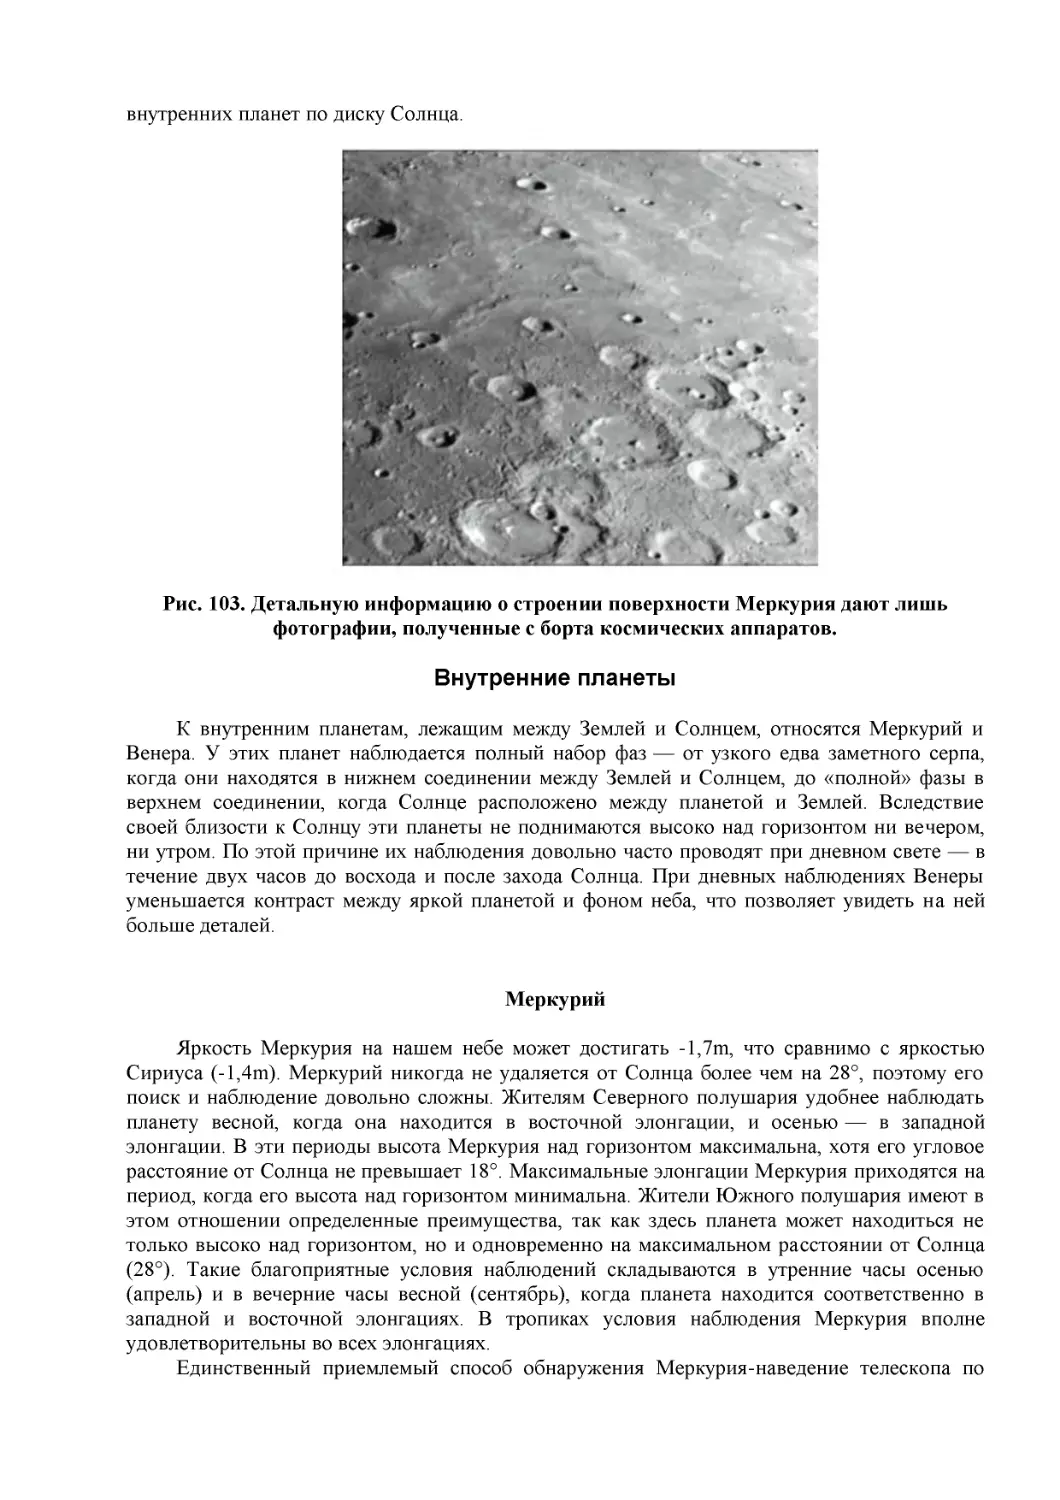 Рис. 103. Детальную информацию о строении поверхности Меркурия дают лишь фотографии, полученные с борта космических аппаратов.
Внутренние планеты
Меркурий